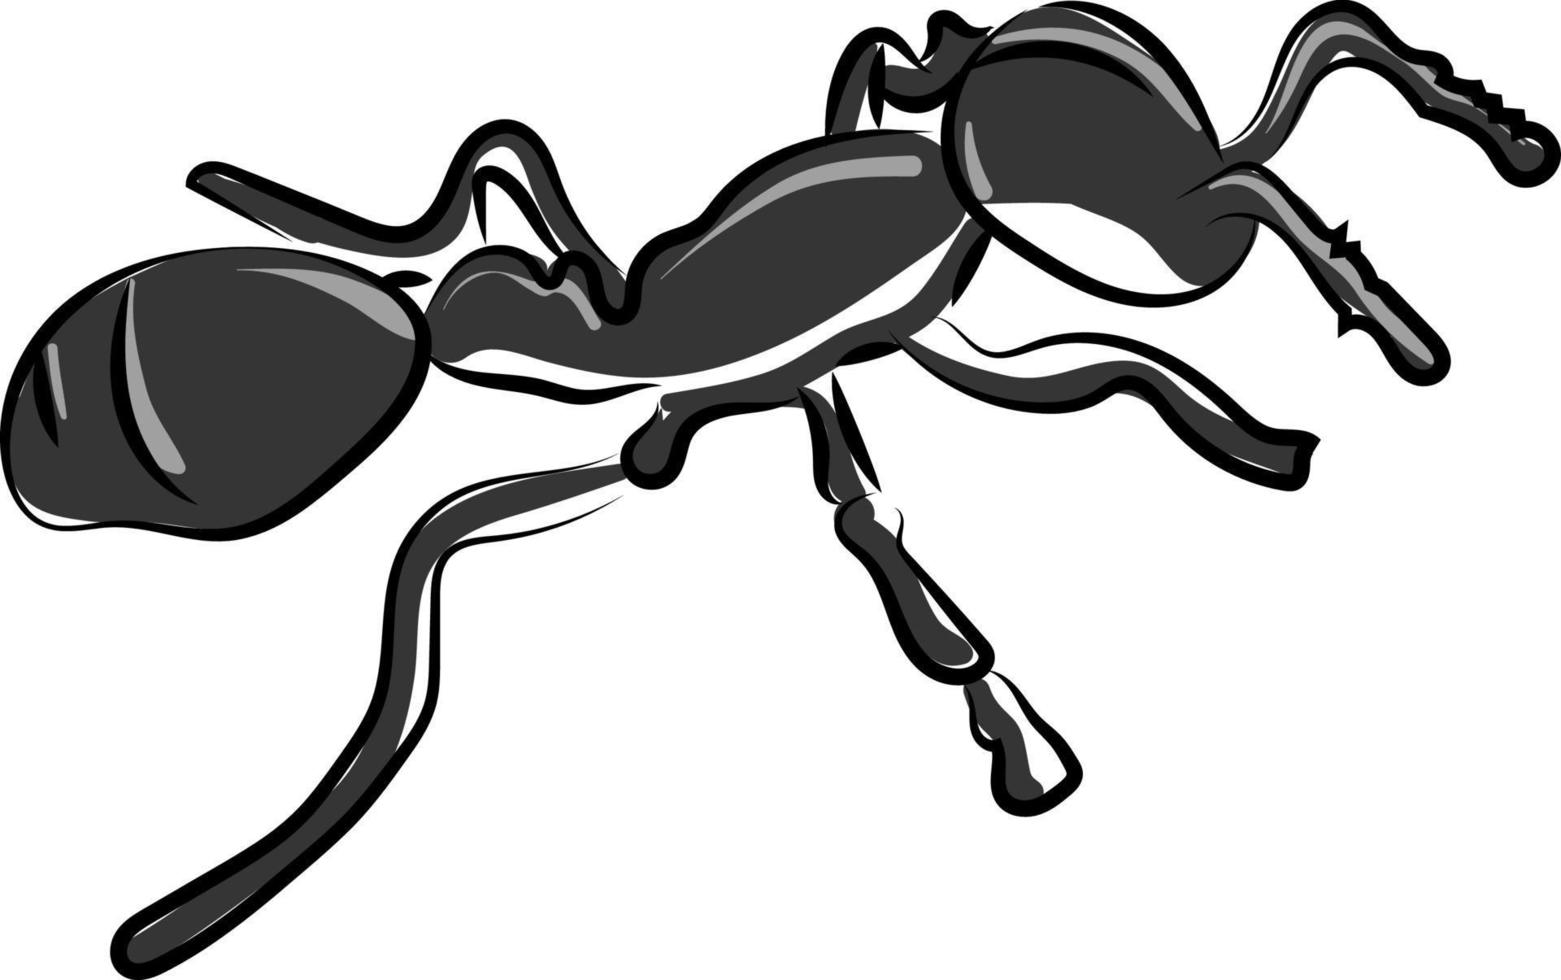 Black little ant, illustration, vector on white background.